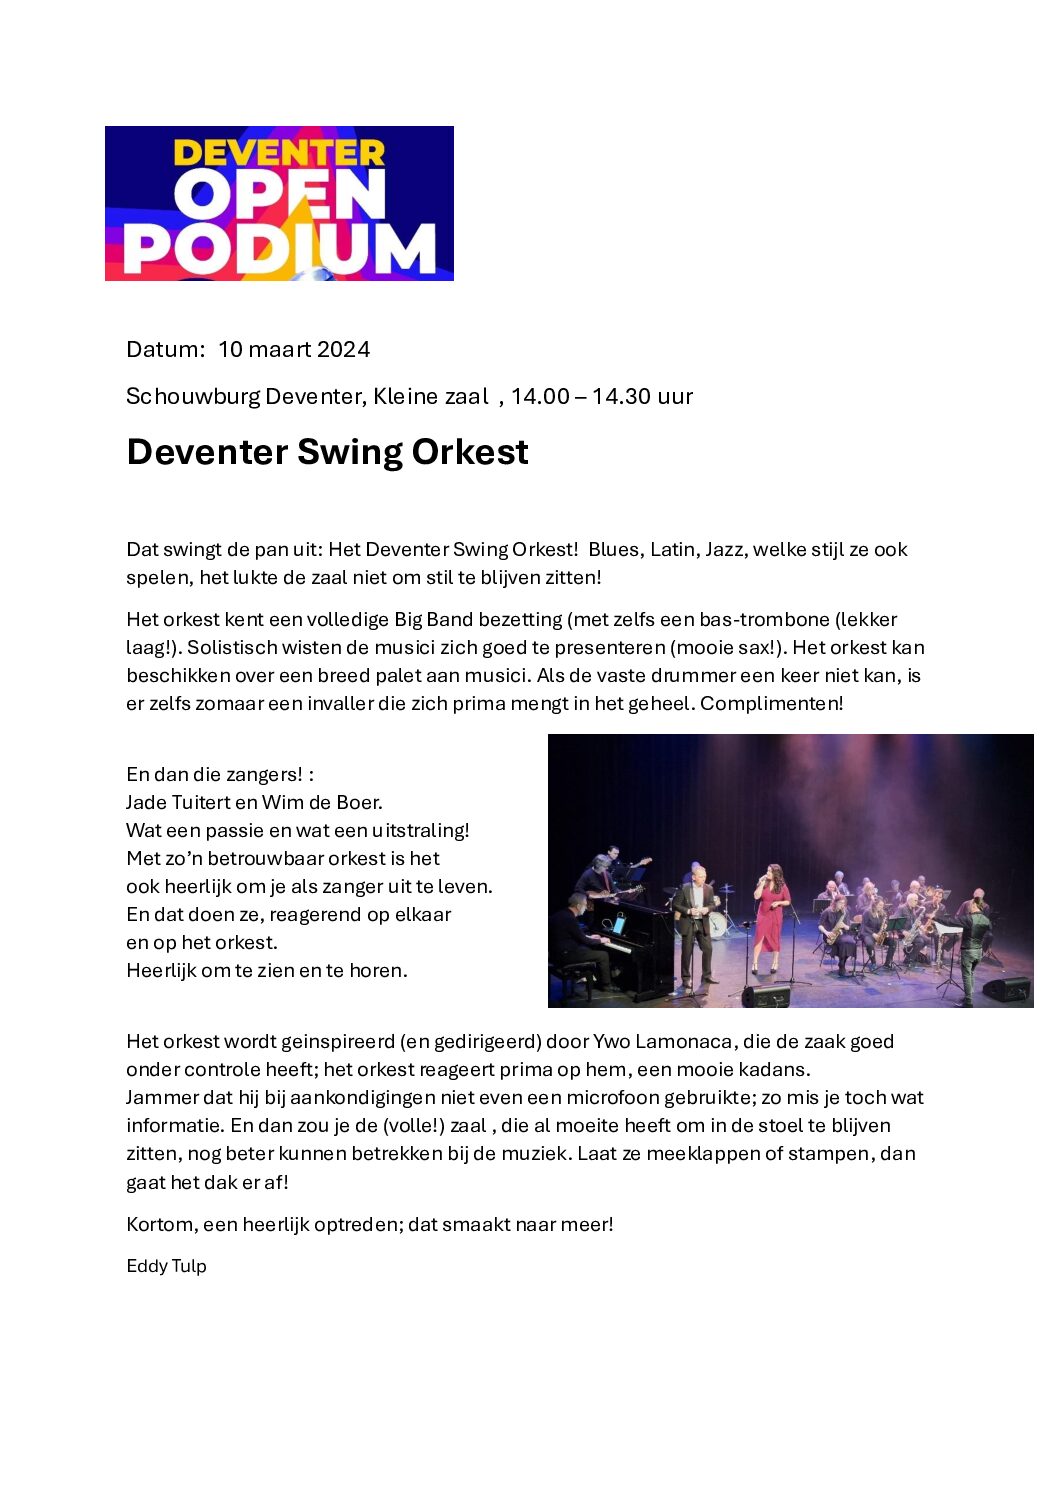 Deventer Open Podium